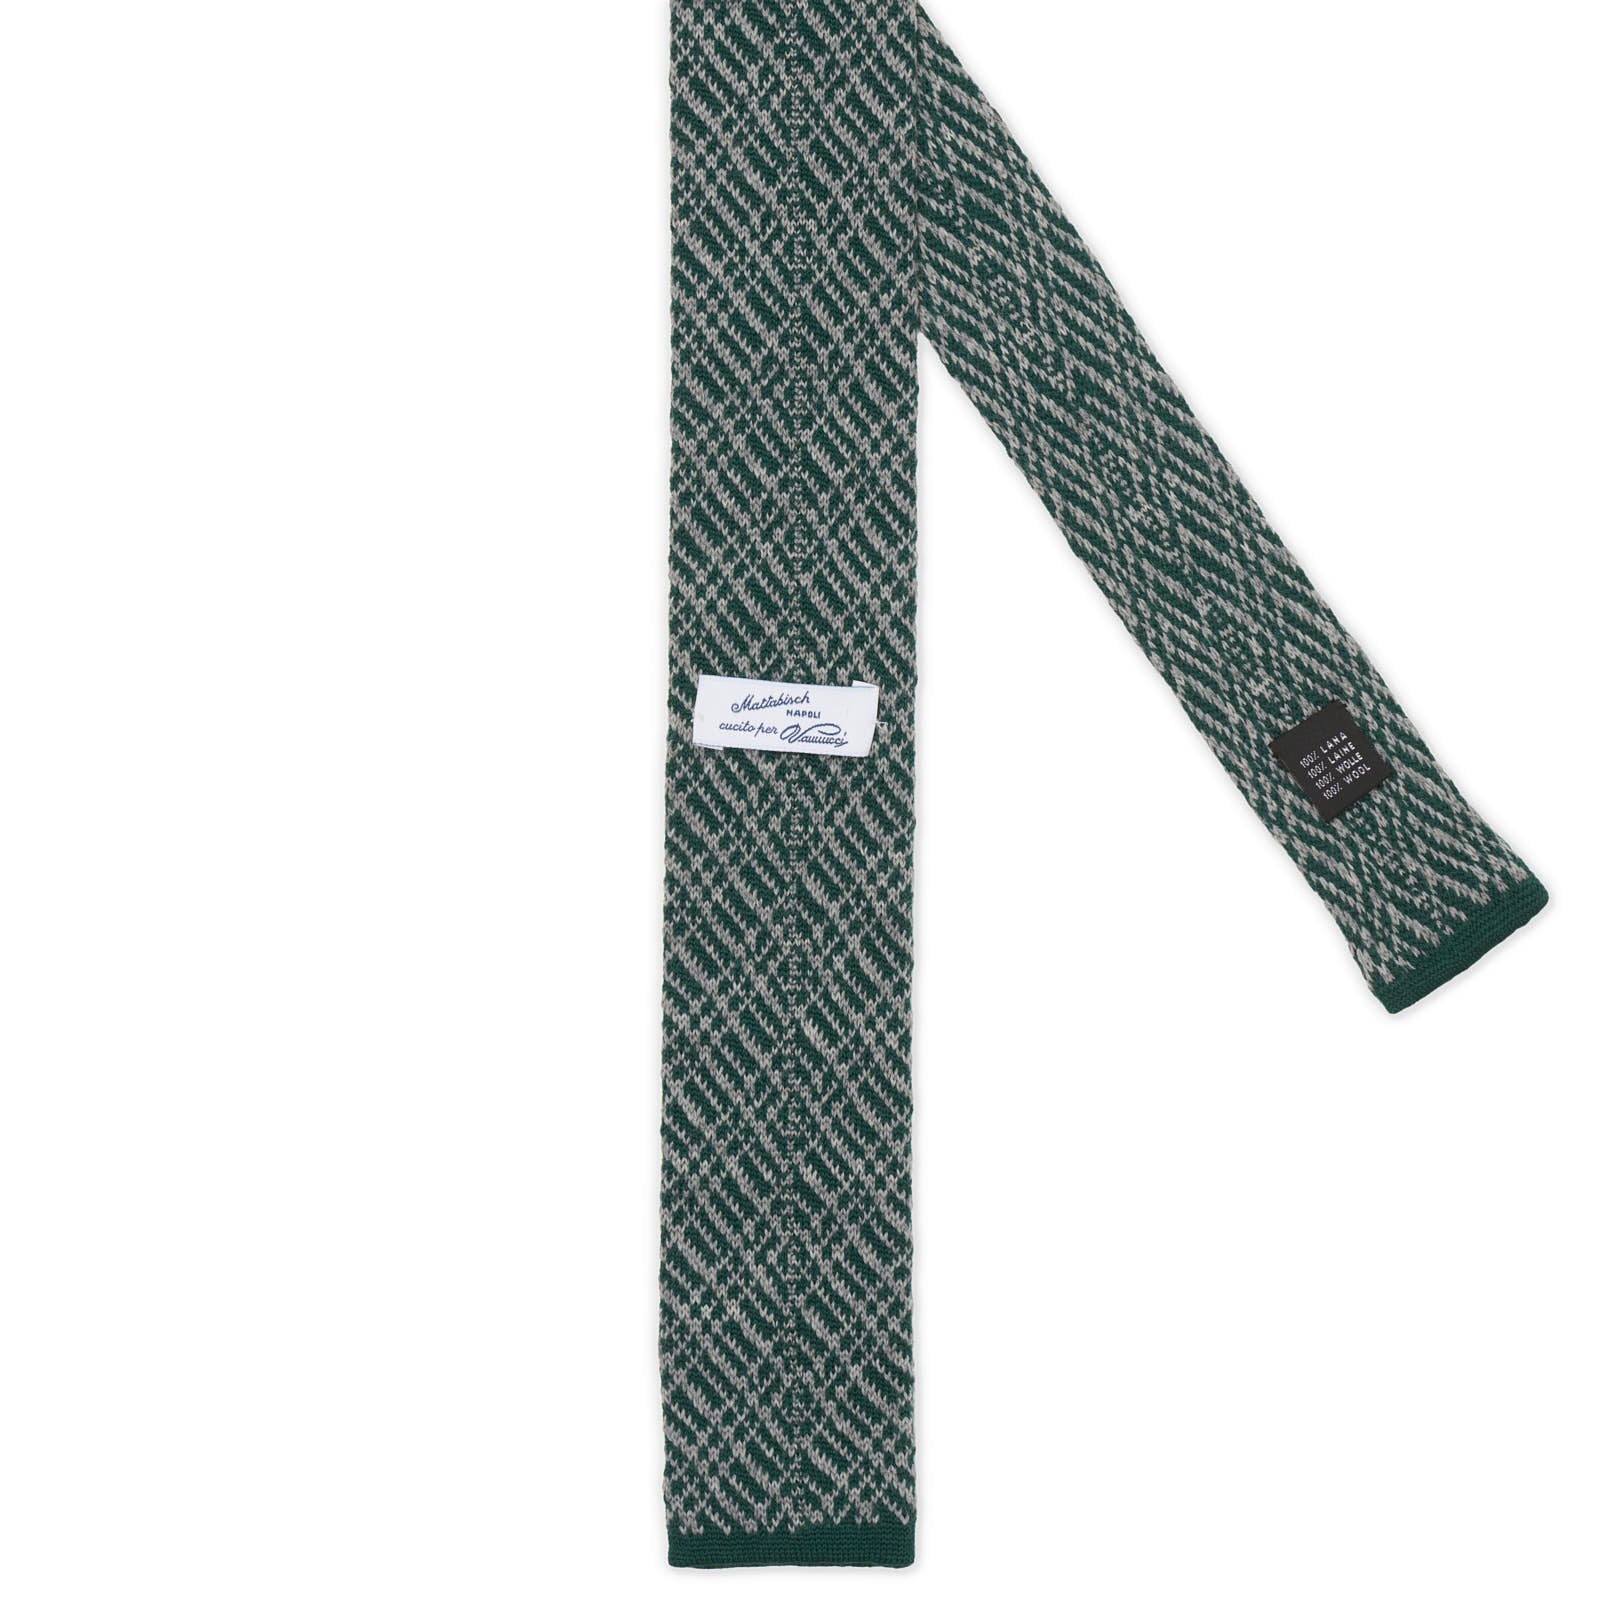 MATTABISCH FOR VANNUCCI Dark Green Geometric Pattern Wool Knit Tie NEW